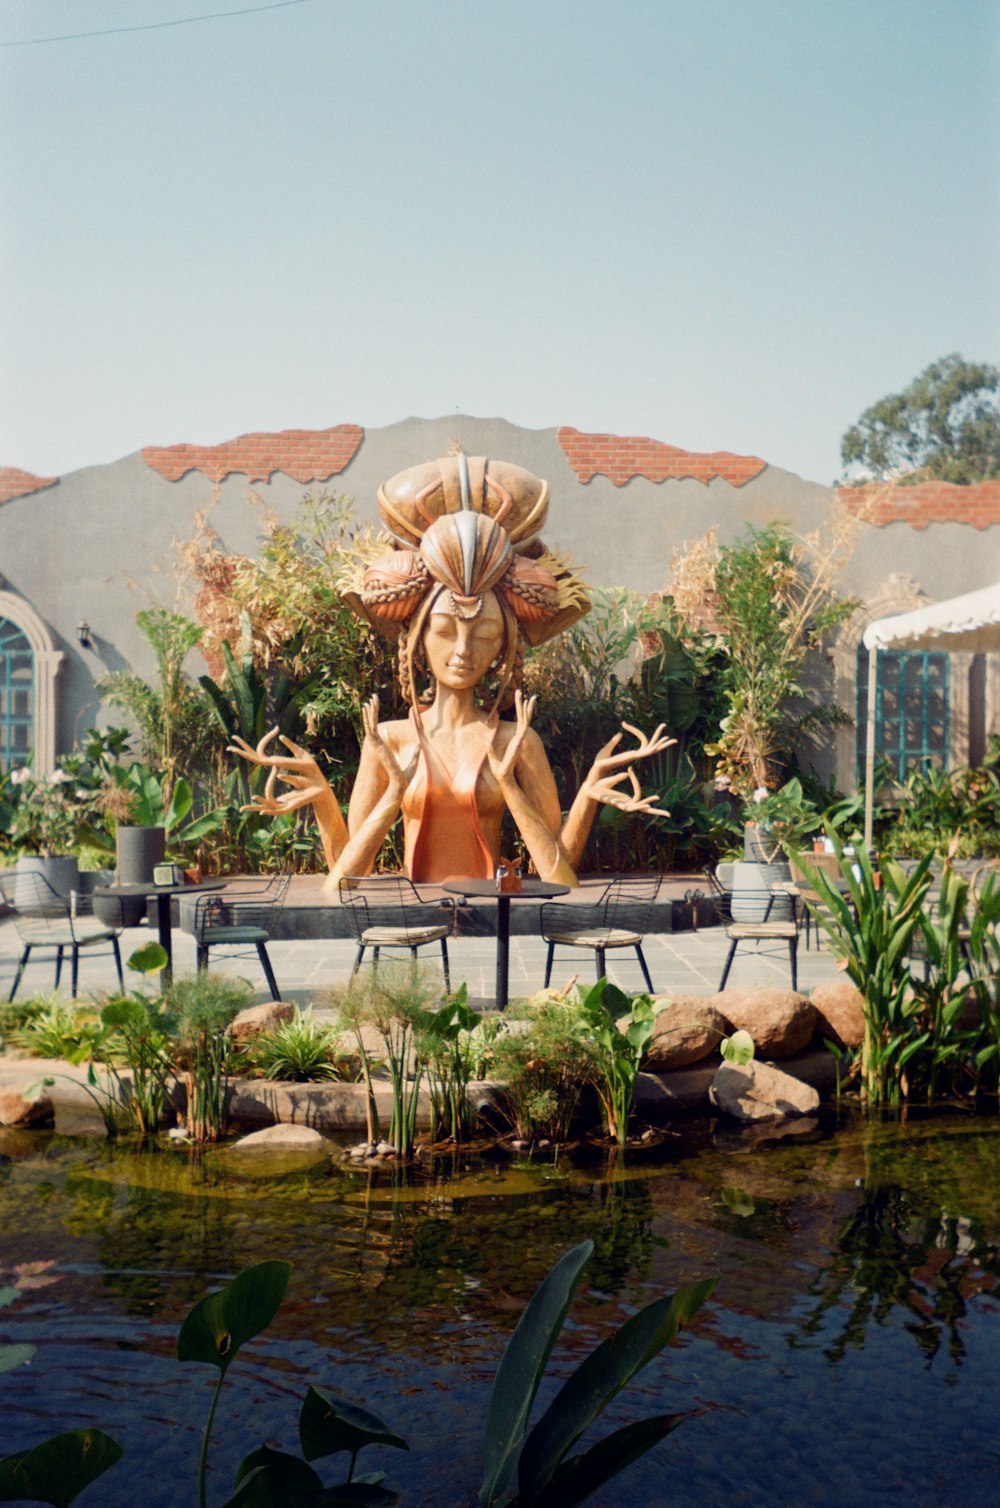 池の前に座る女性の像